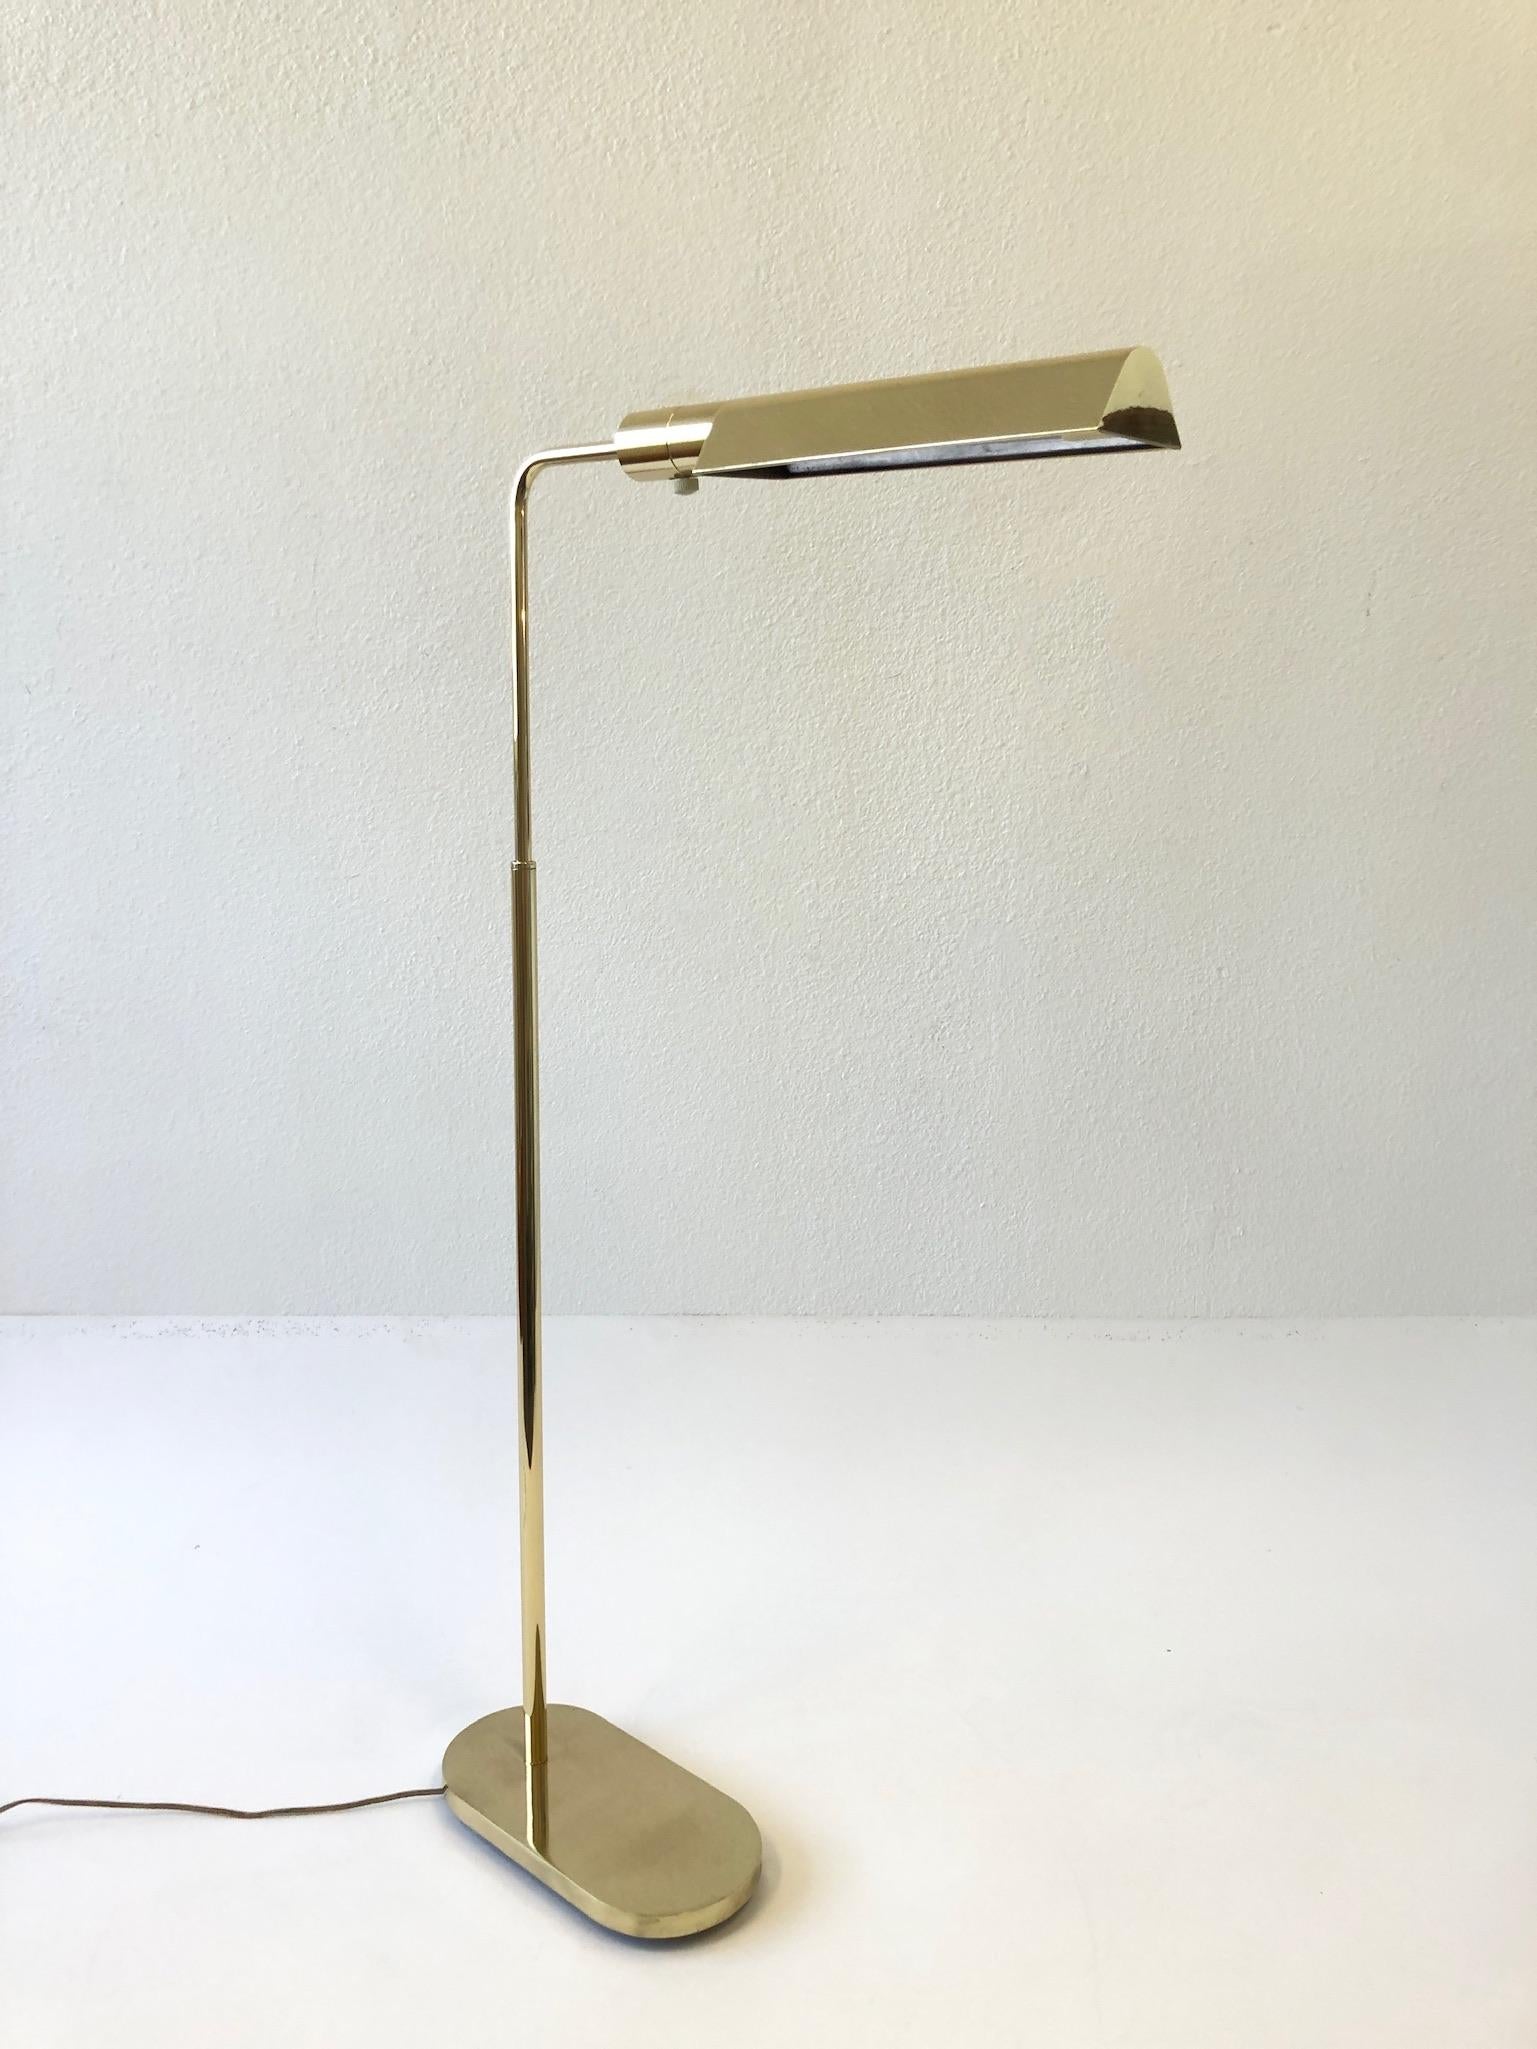 Lampadaire réglable en laiton poli des années 1970 par Casella Lighting.
La hauteur est de 48